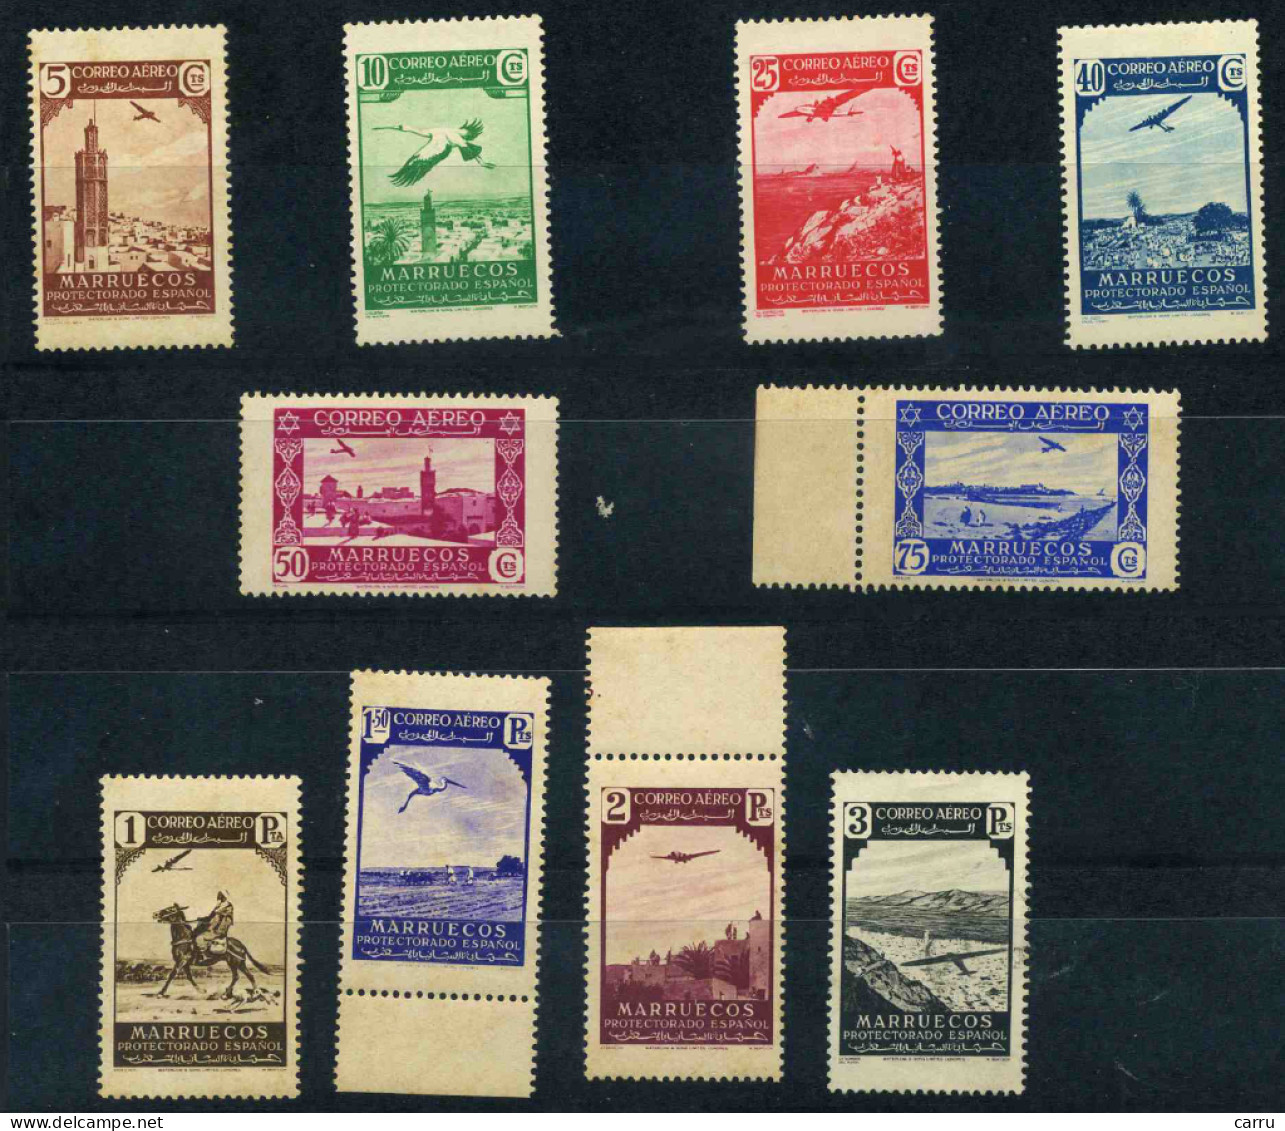 Marruecos 1938 (186/195) - Maroc Espagnol